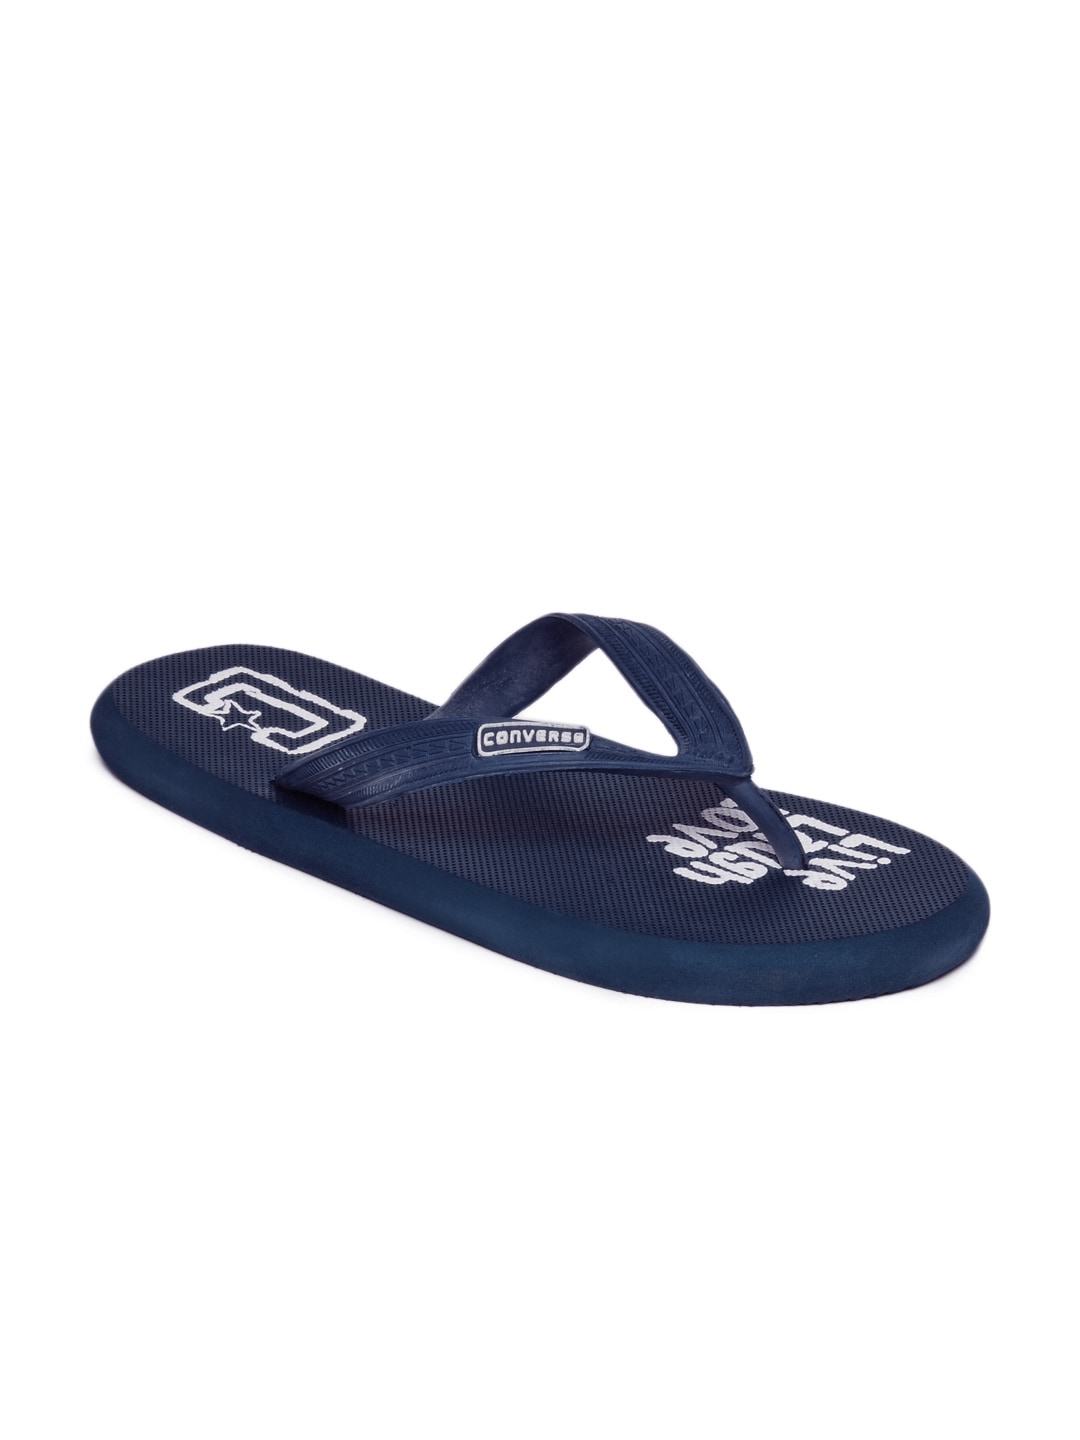 Converse Unisex Blue Flip Flops